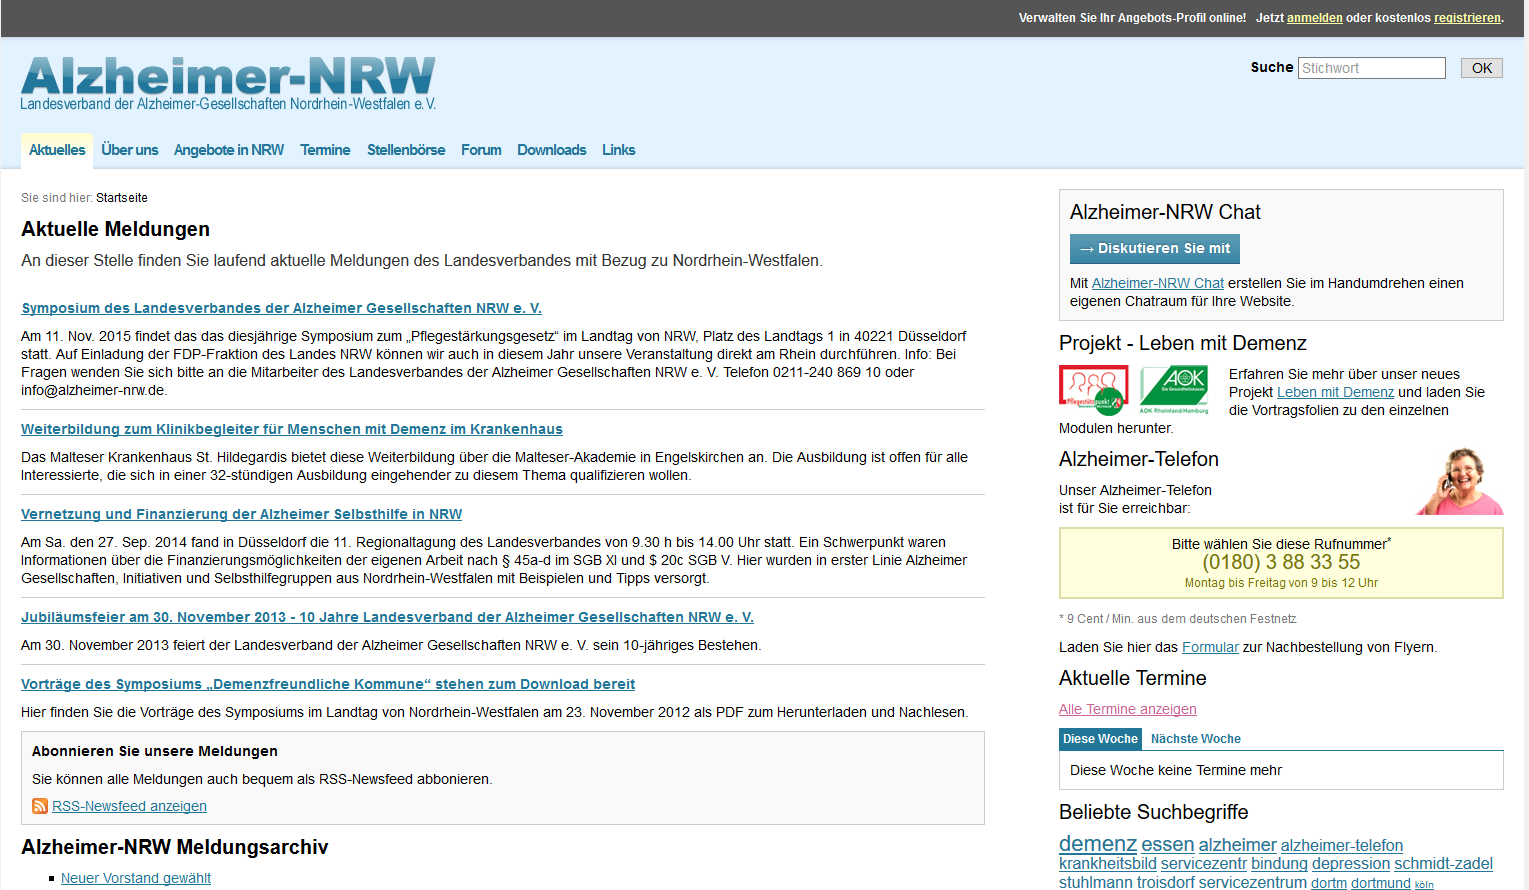 Website Alzheimer-NRW